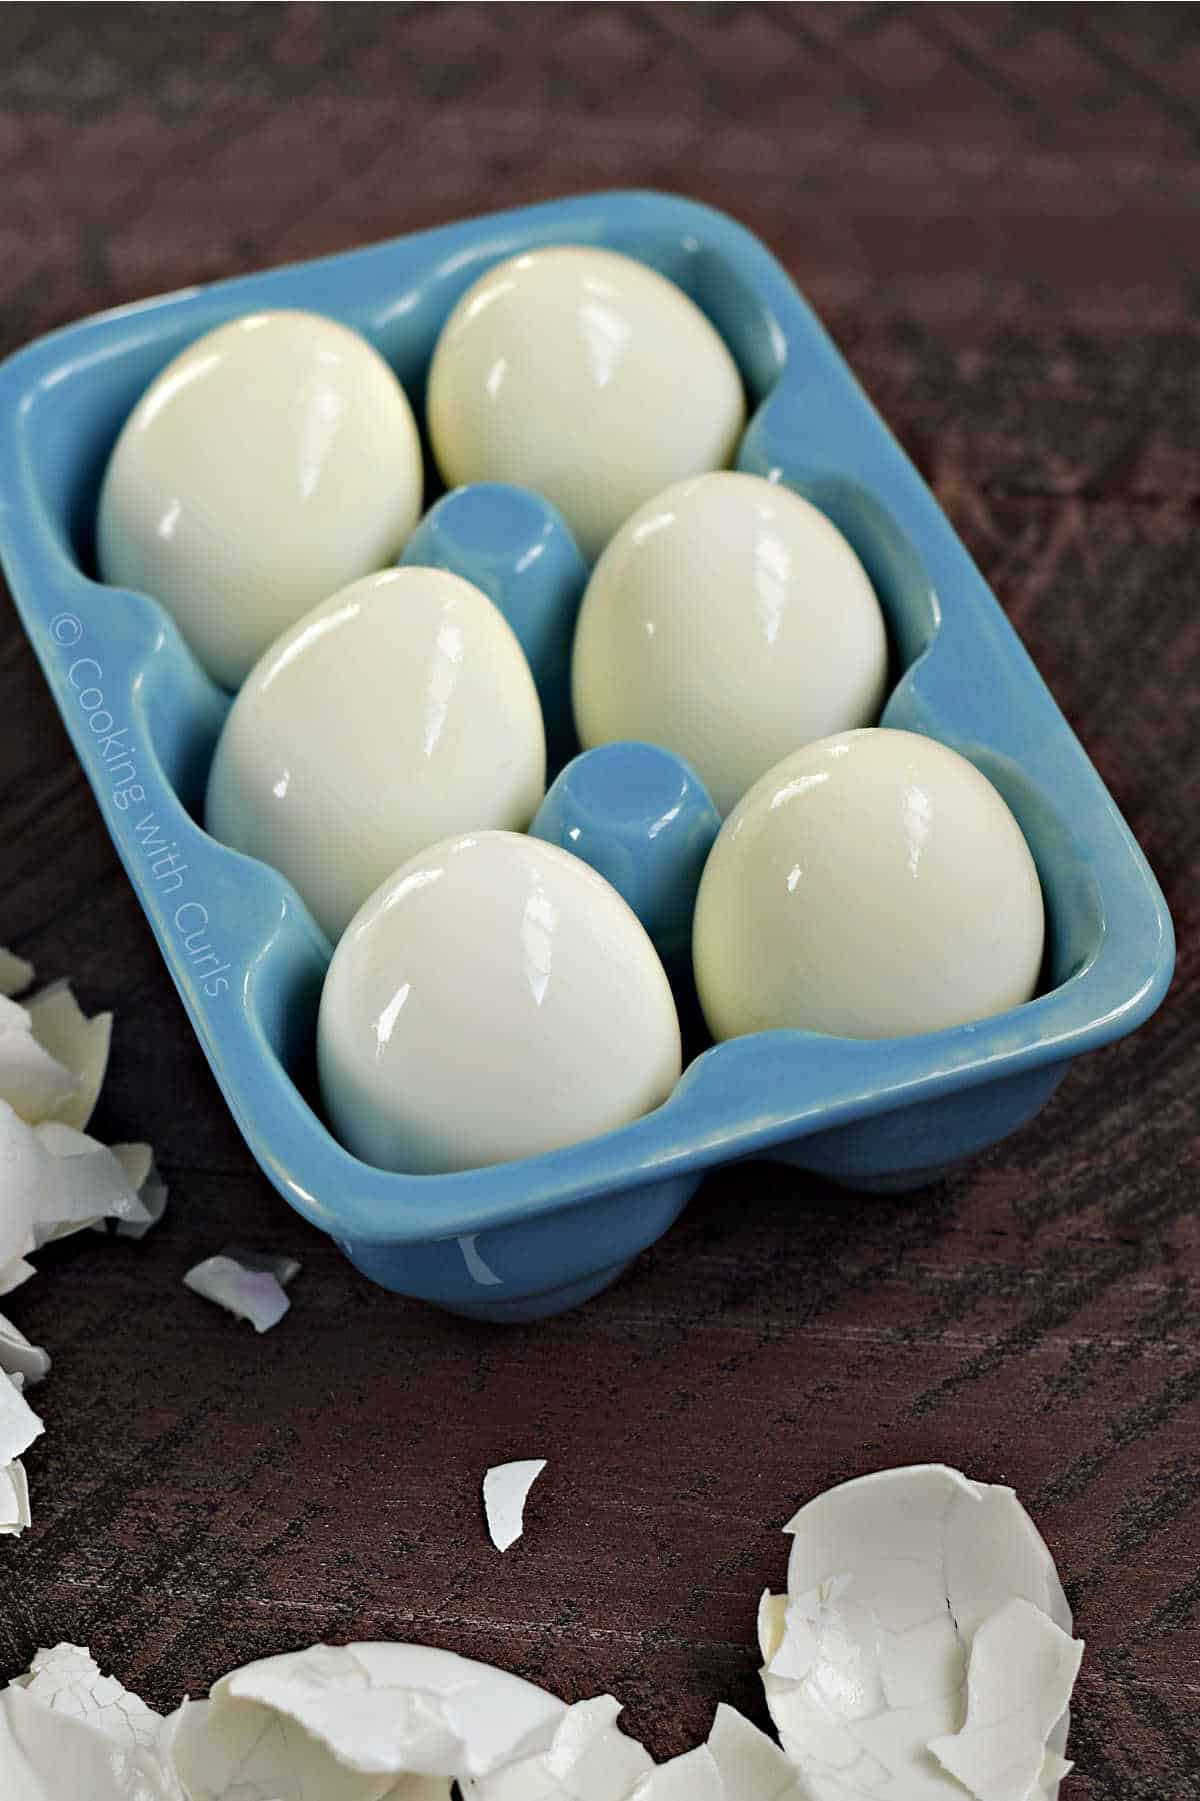 Six hard boiled eggs in a blue ceramic egg holder.